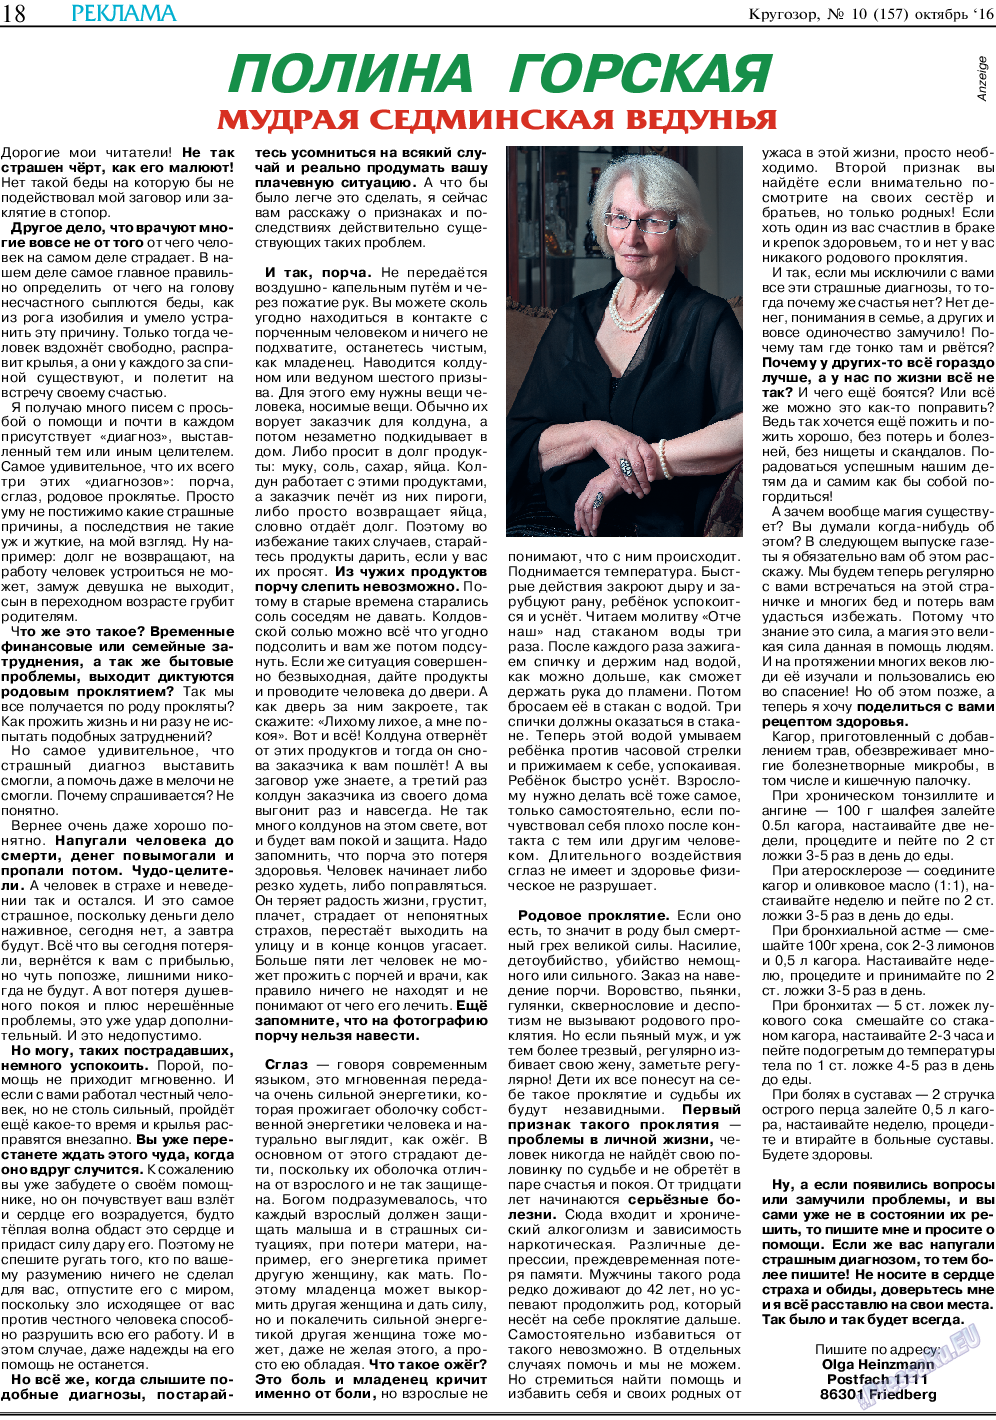 Кругозор (газета). 2016 год, номер 10, стр. 18